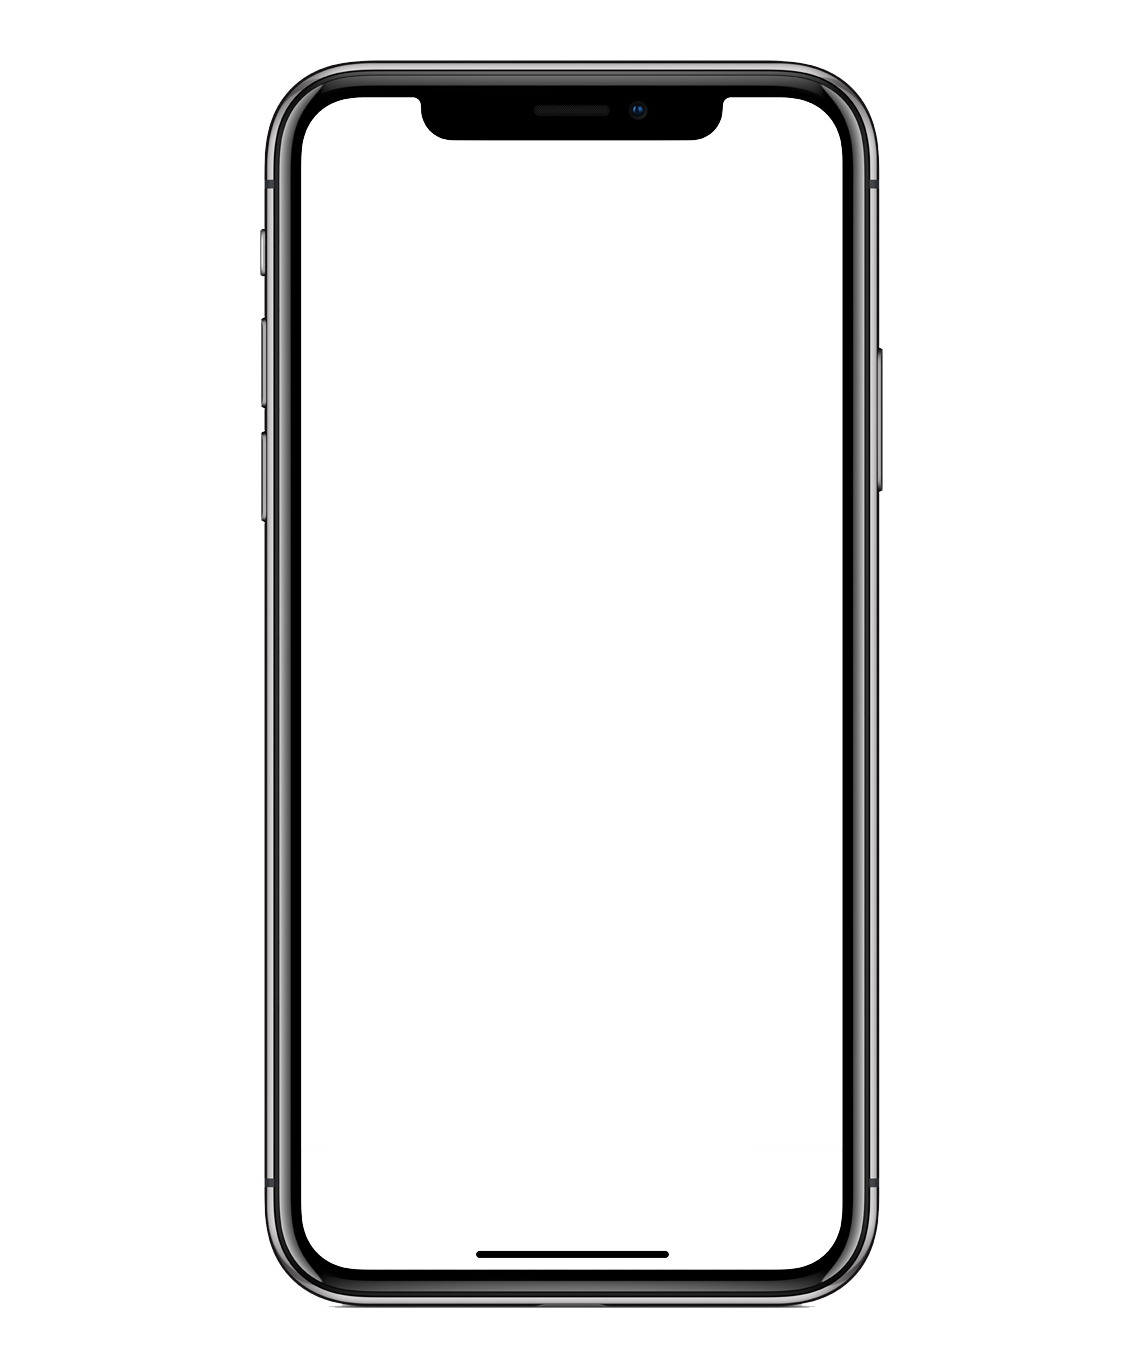 最新苹果手机iPhone 12样机合集素材 - 设计口袋